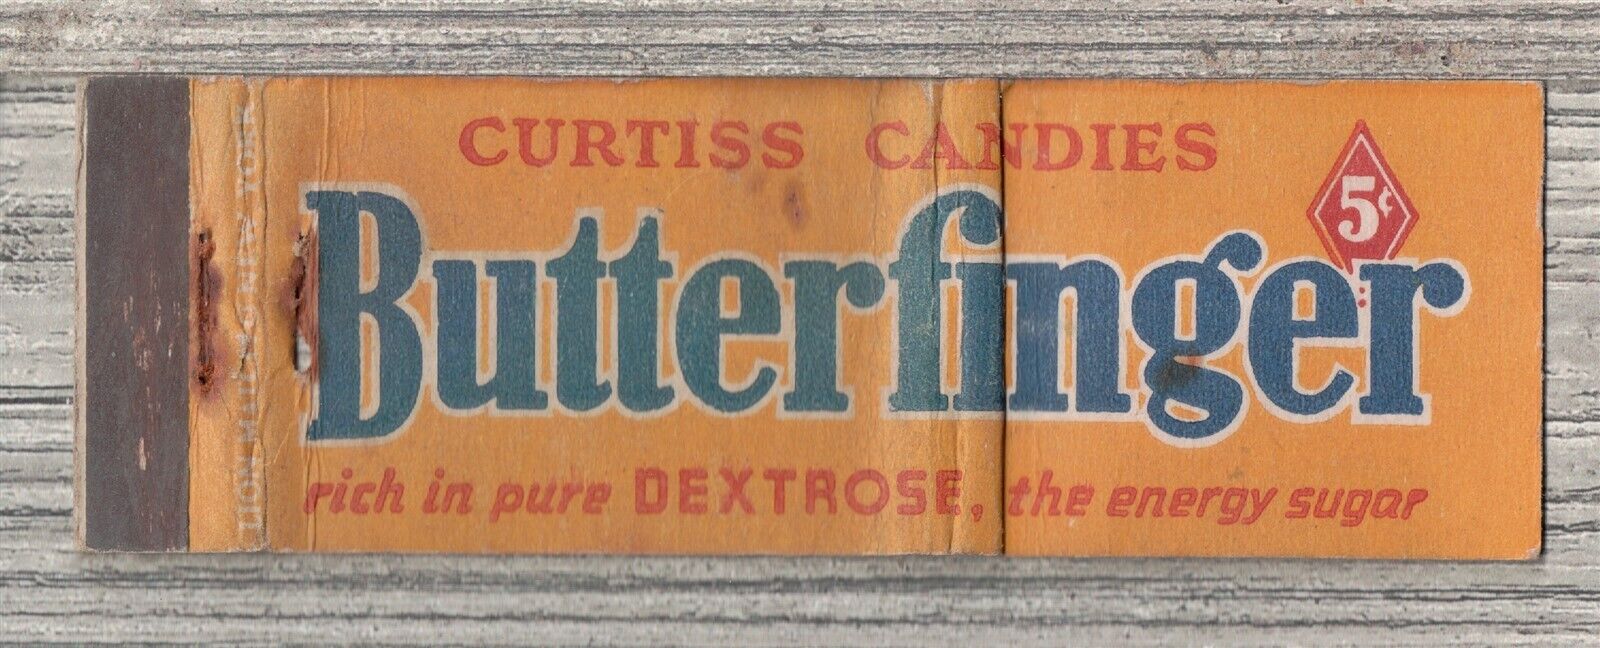 Matchbook Cover-Curtiss Candies Butterfinger Candy Bar-0003